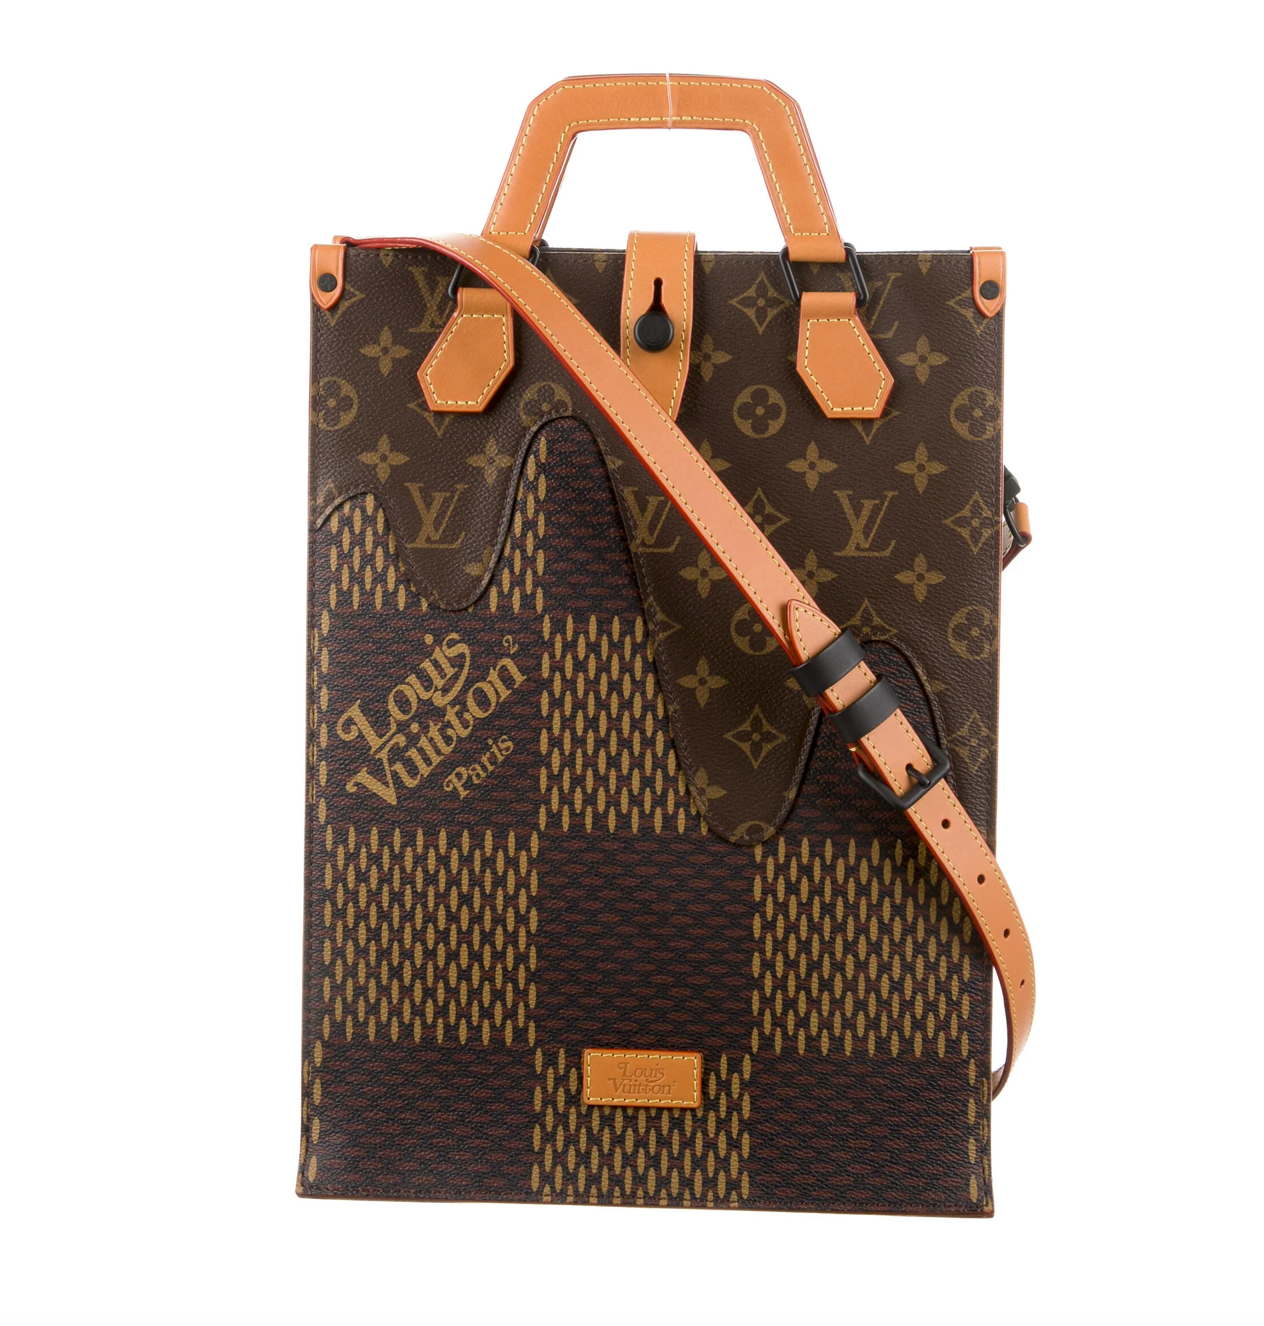 Louis Vuitton x Nigo Limited Edition Giant Damier Monogram Mini Tote Bag